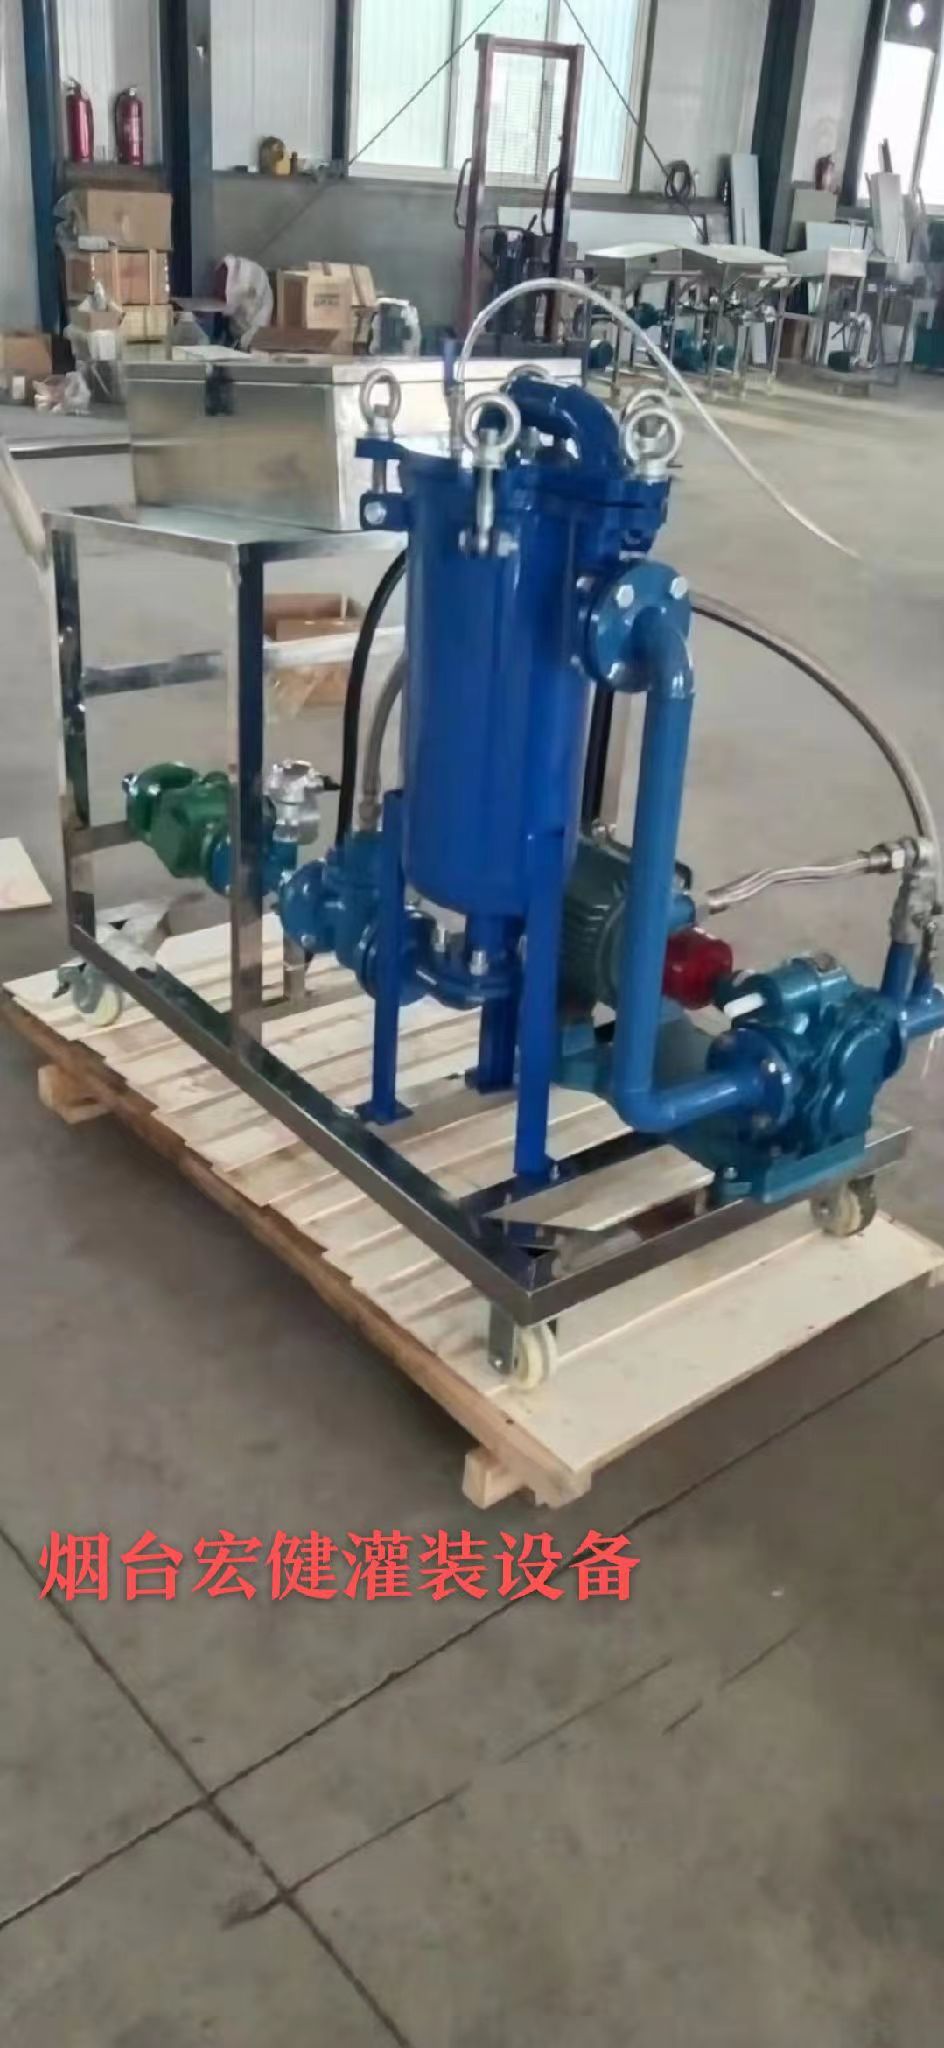 可移动袋式过滤液体灌装机 移动液体灌装机械 厂家定制图片